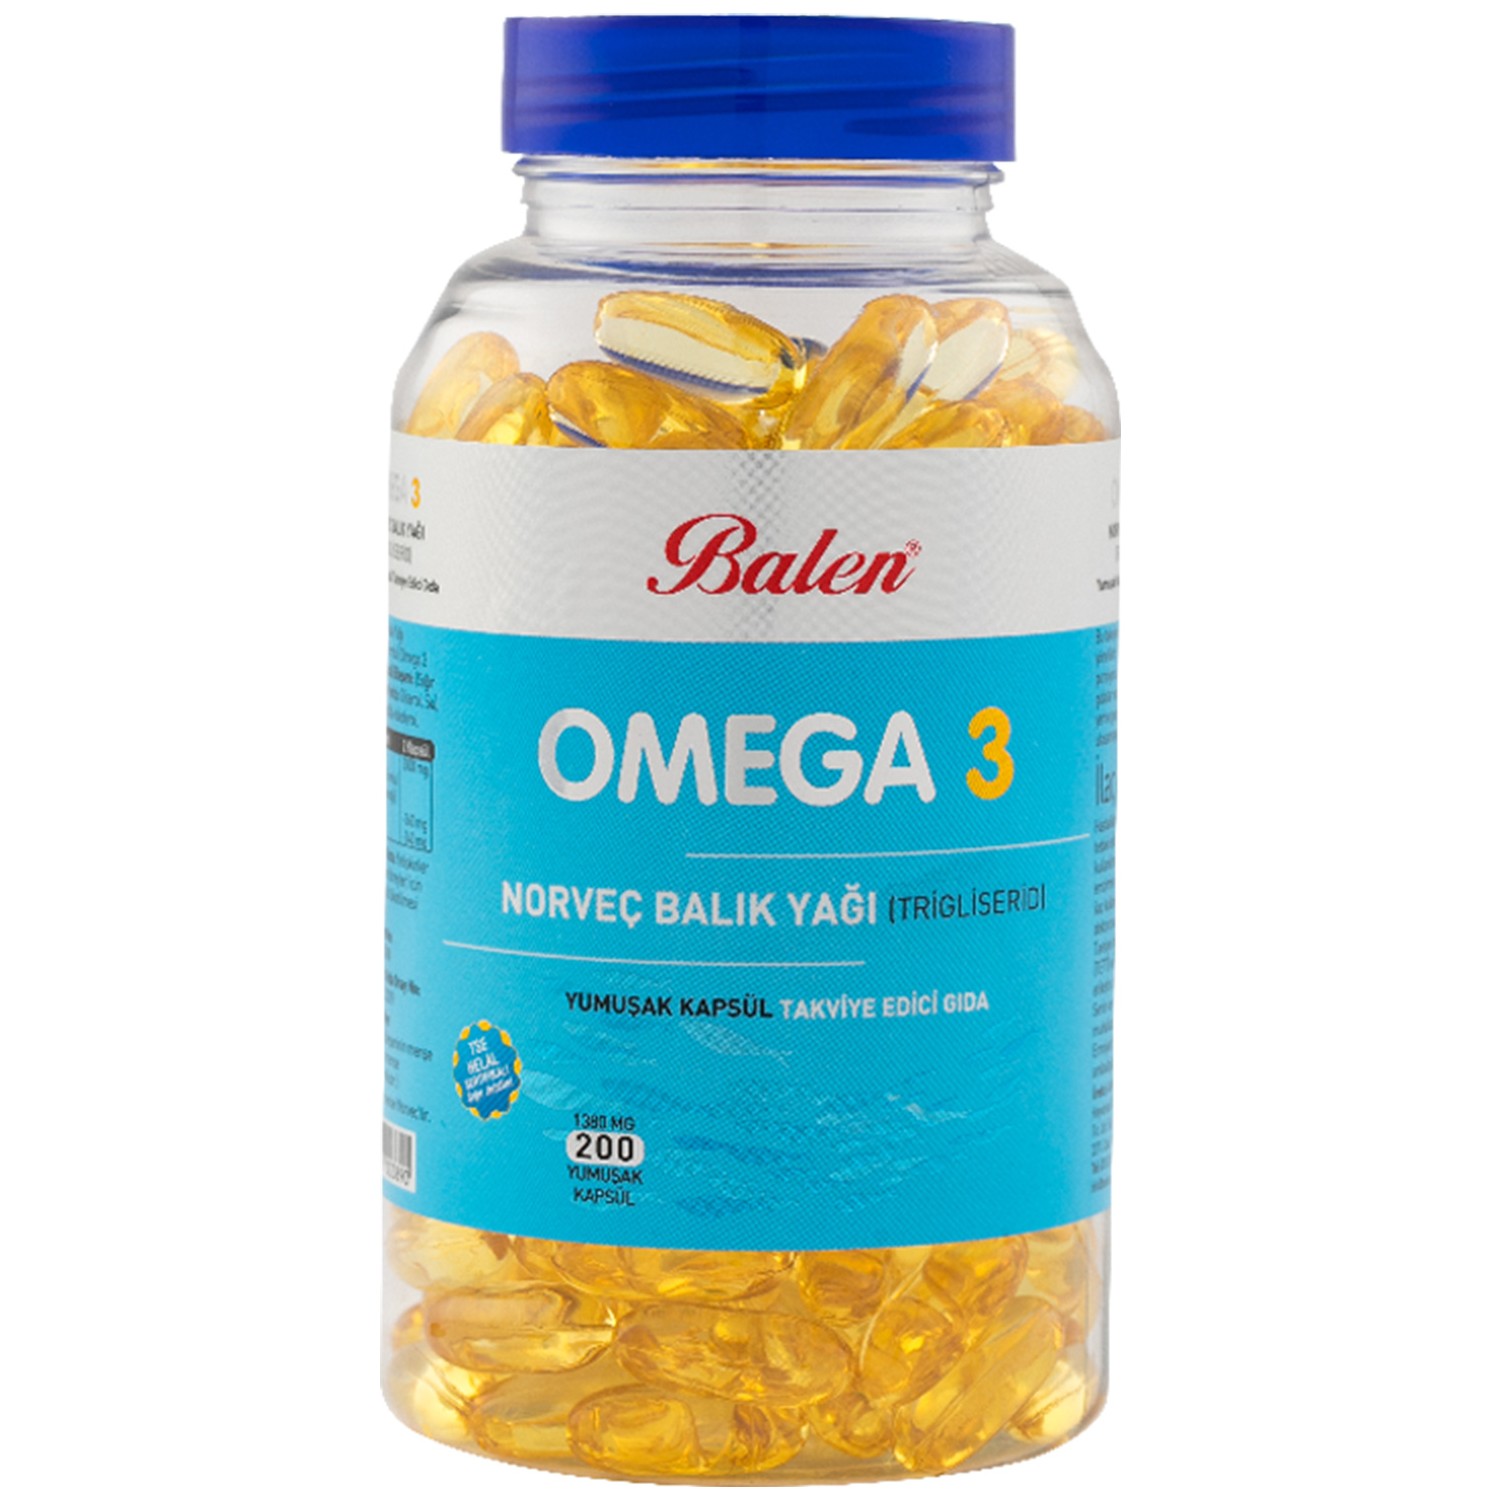 Норвежский рыбий жир Balen Omega-3 (триглицерид) 1380 мг, 200 капсул цена и фото